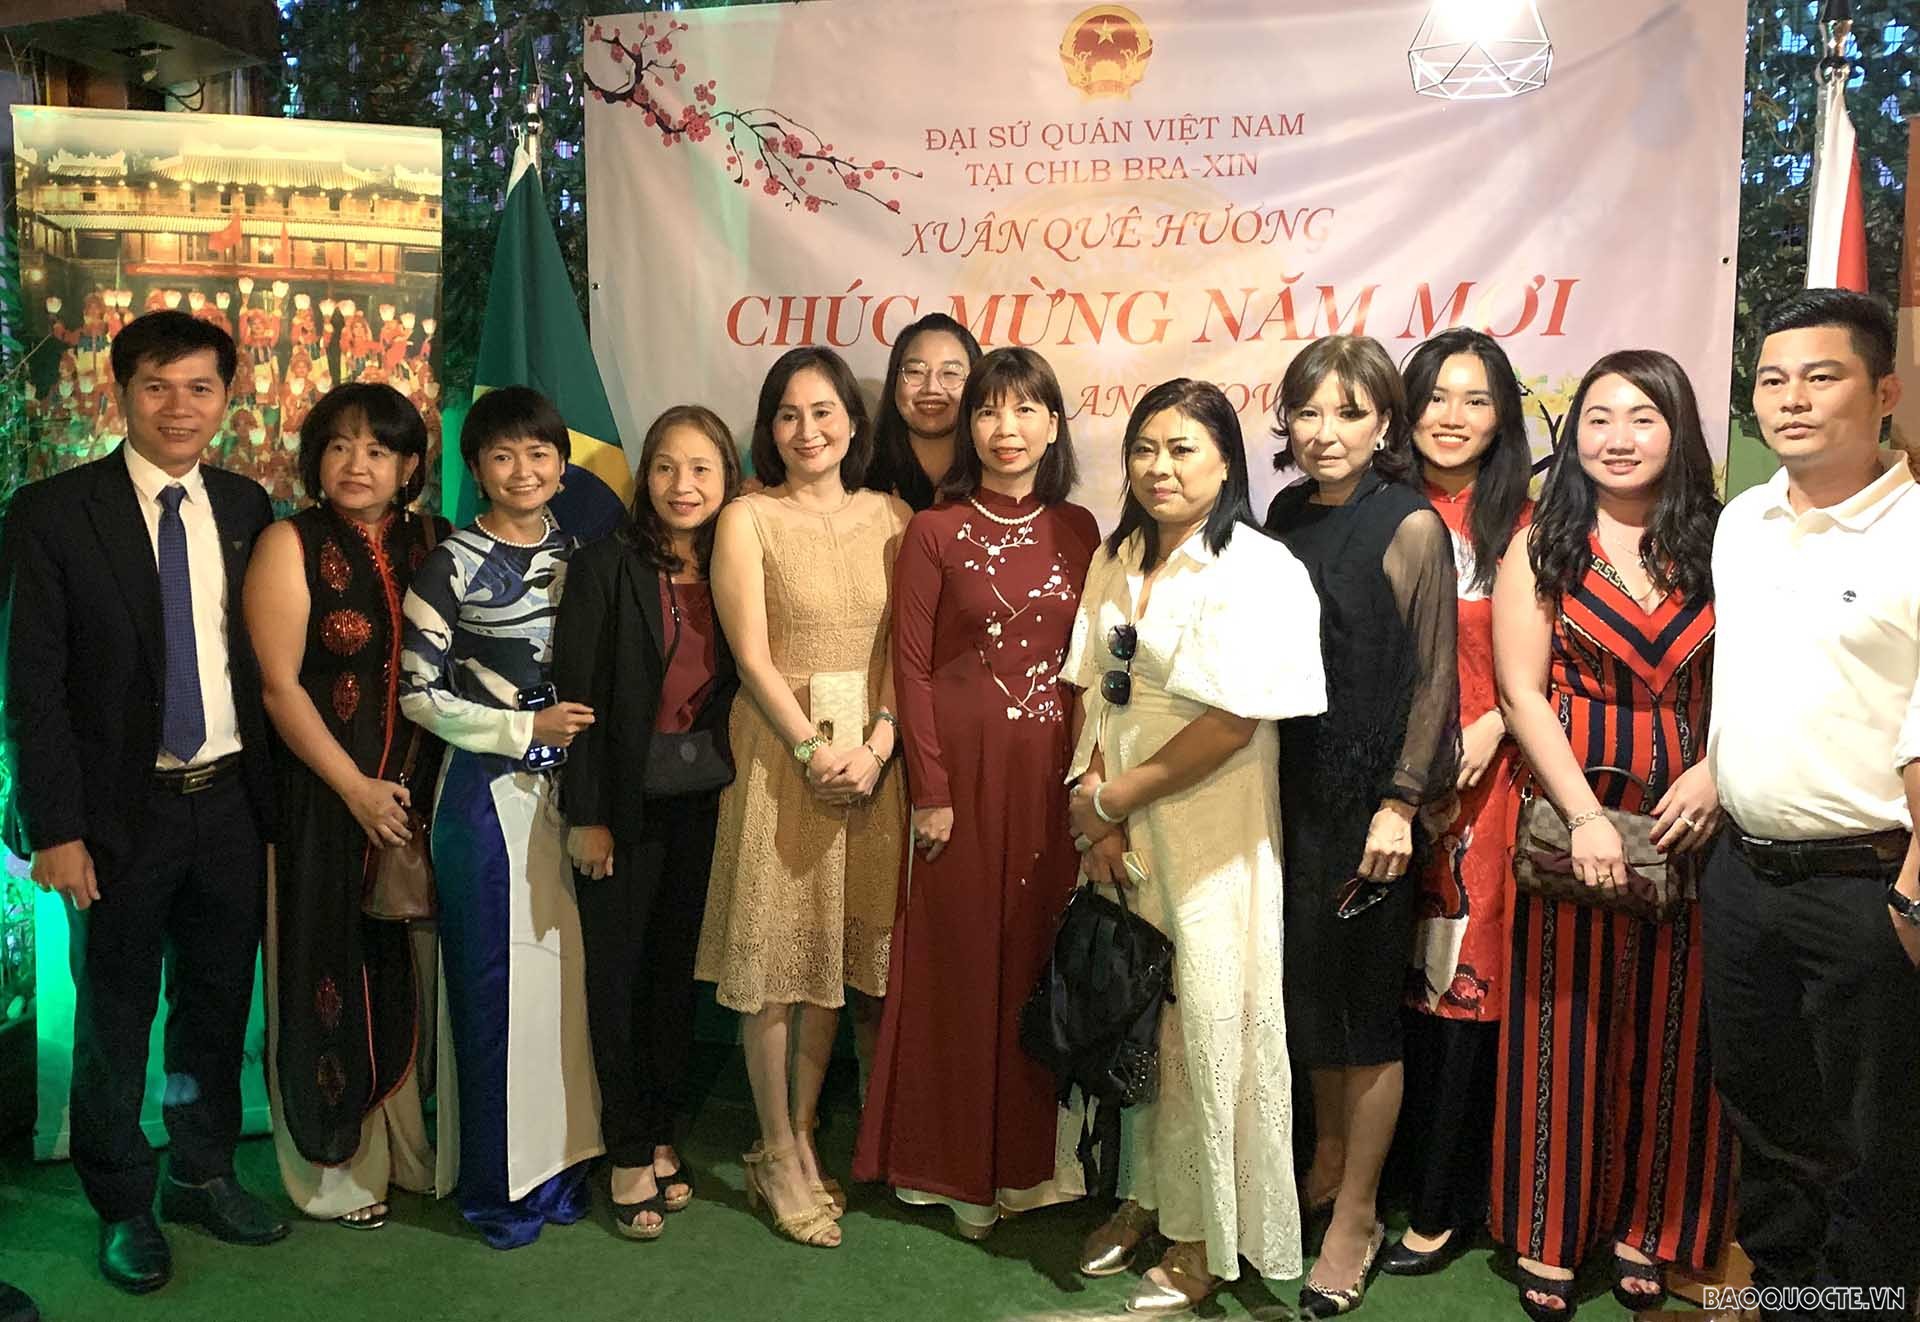 Đại sứ quán Việt Nam tại Brazil tổ chức chương trình Xuân Quê hương gặp gỡ cộng đồng người Việt Nam tại thành phố São Paulo.